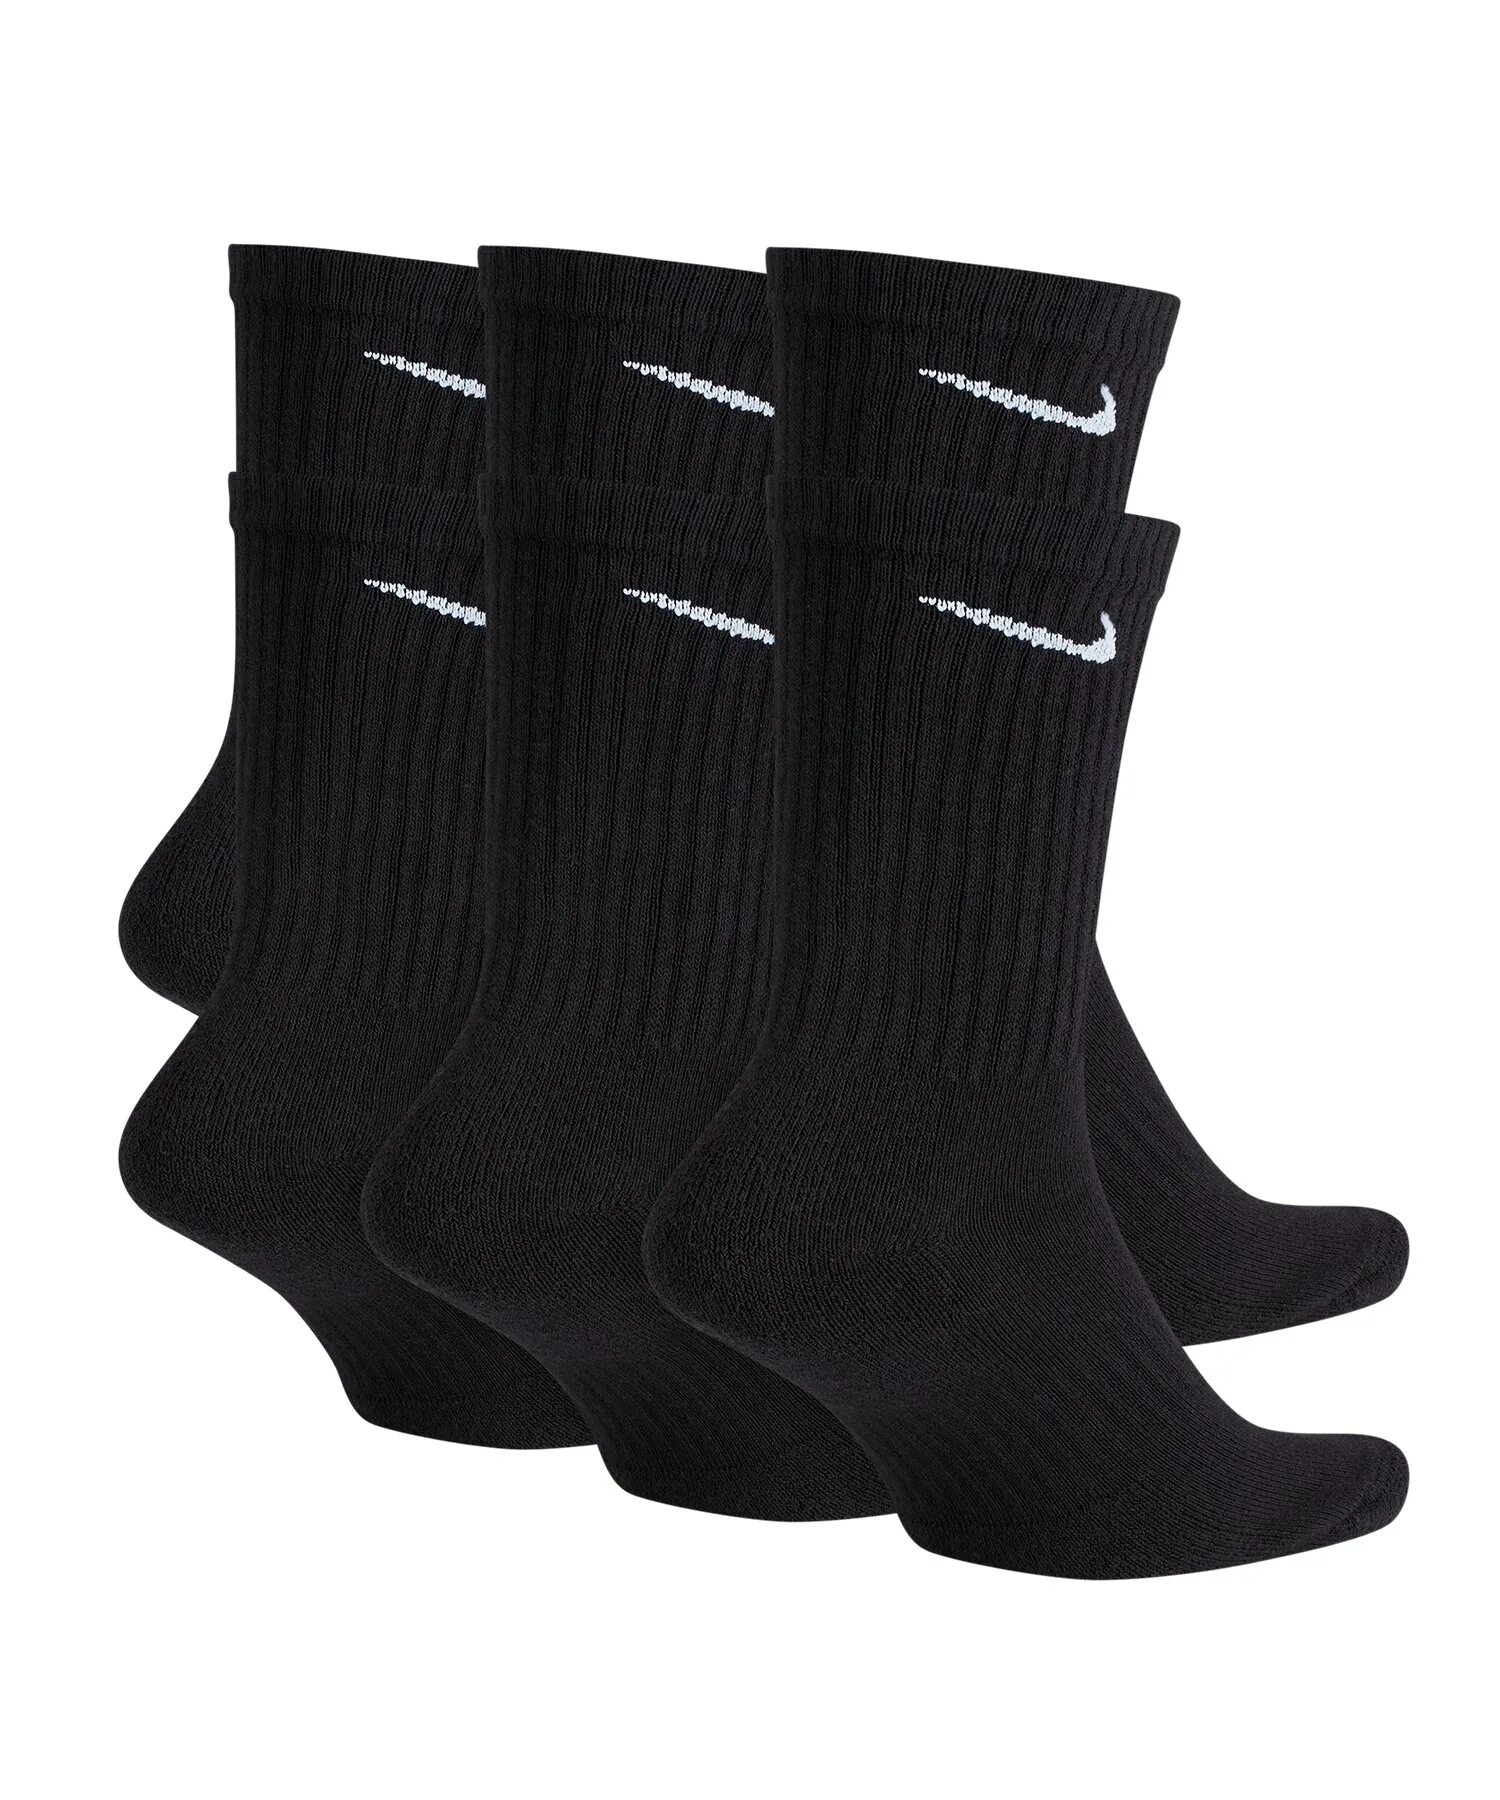 Черные носки найк. Носки найк. Носки черные. Носки мужские черные высокие. Носки найк черные длинные.